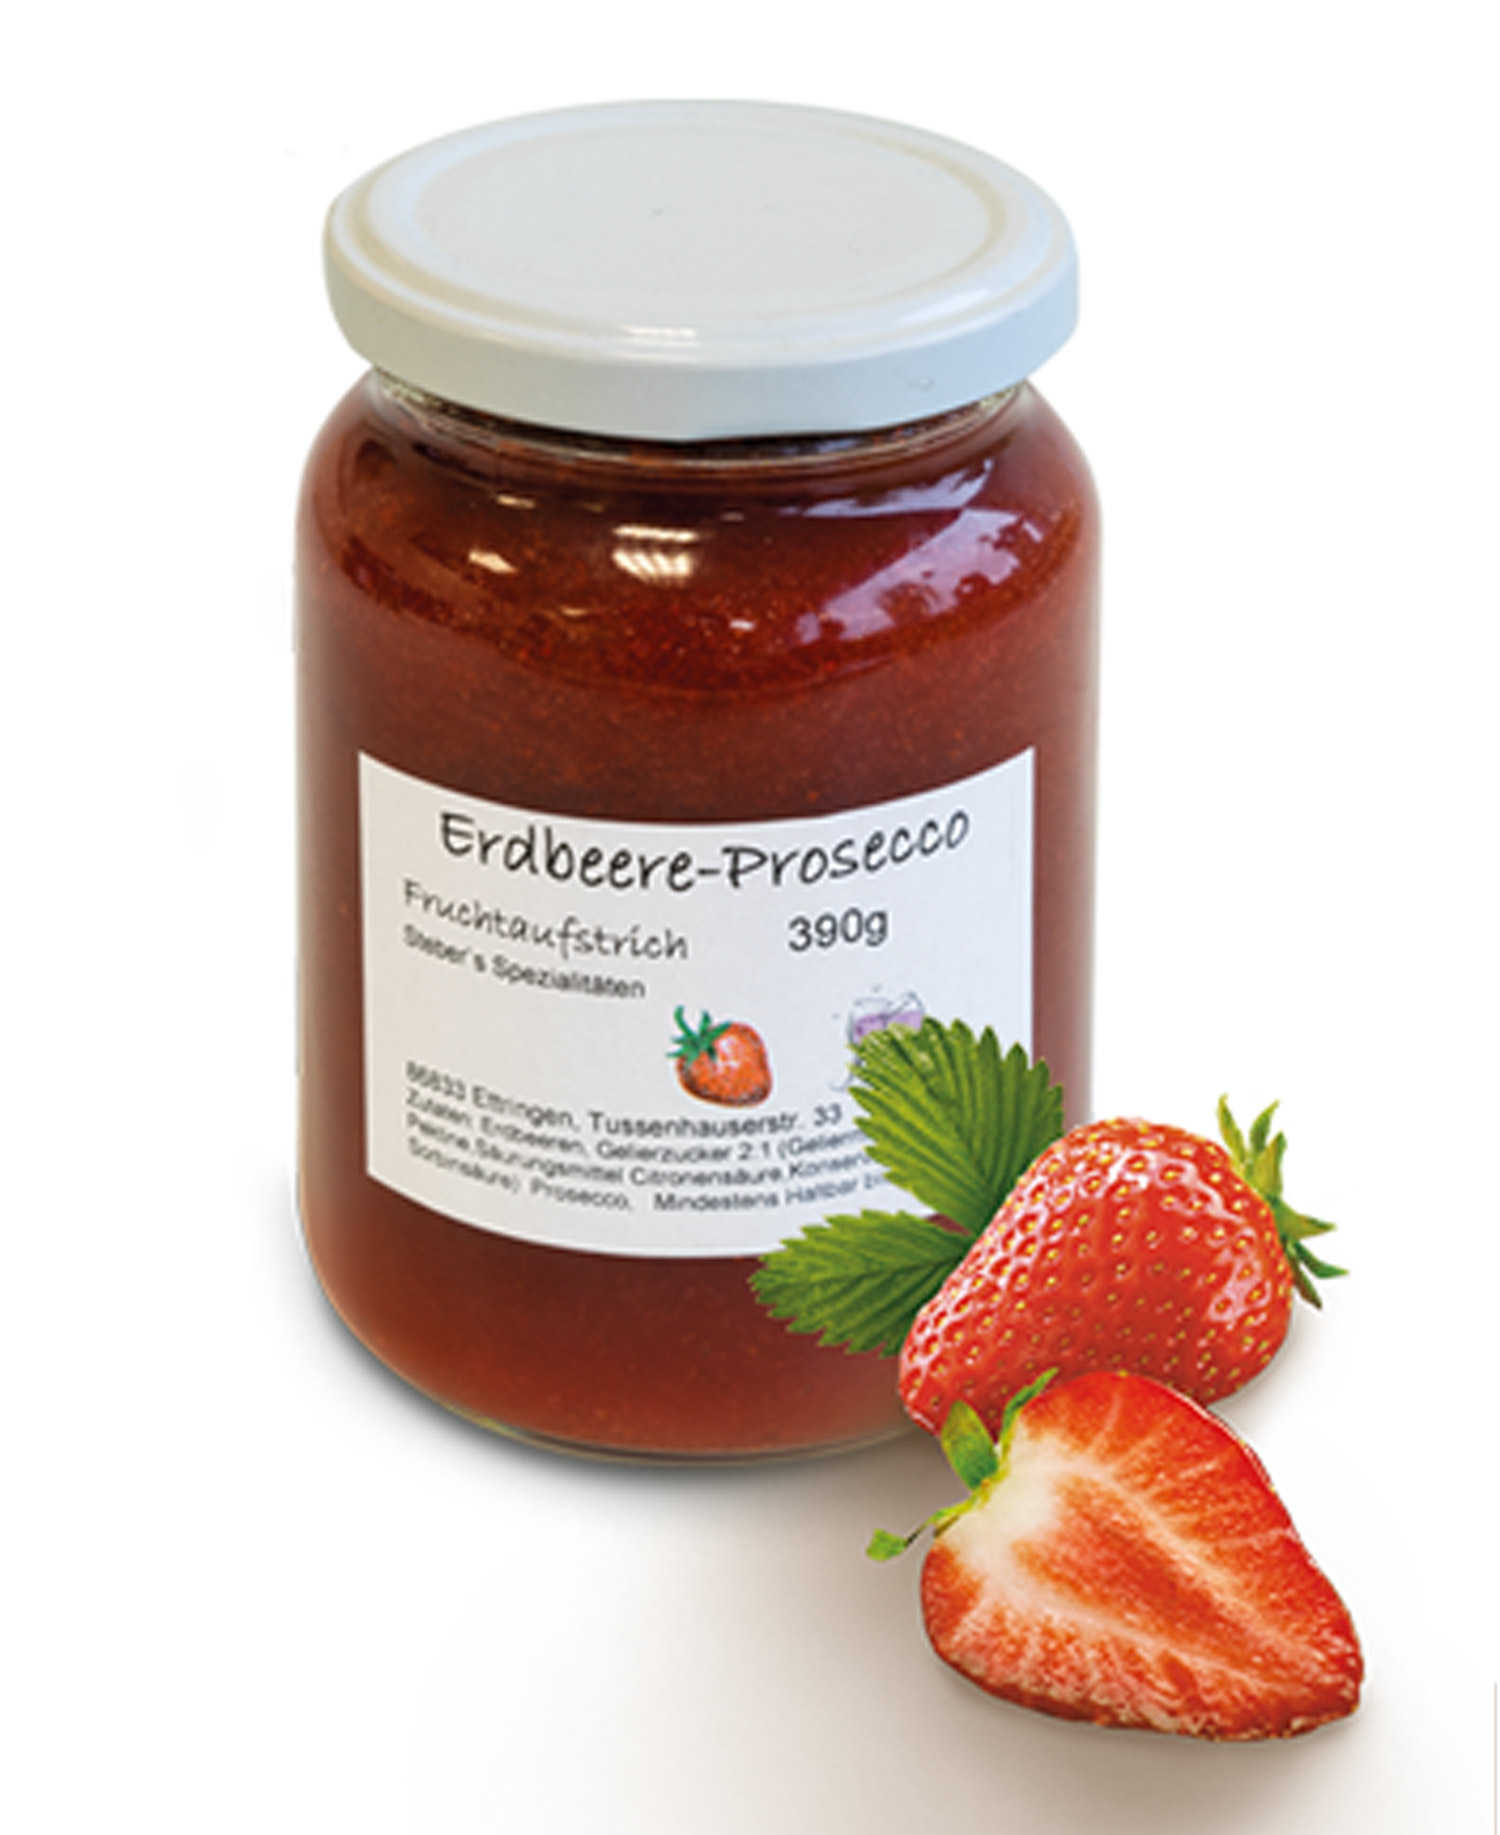 Erdbeer-Prosecco-Fruchtaufstrich